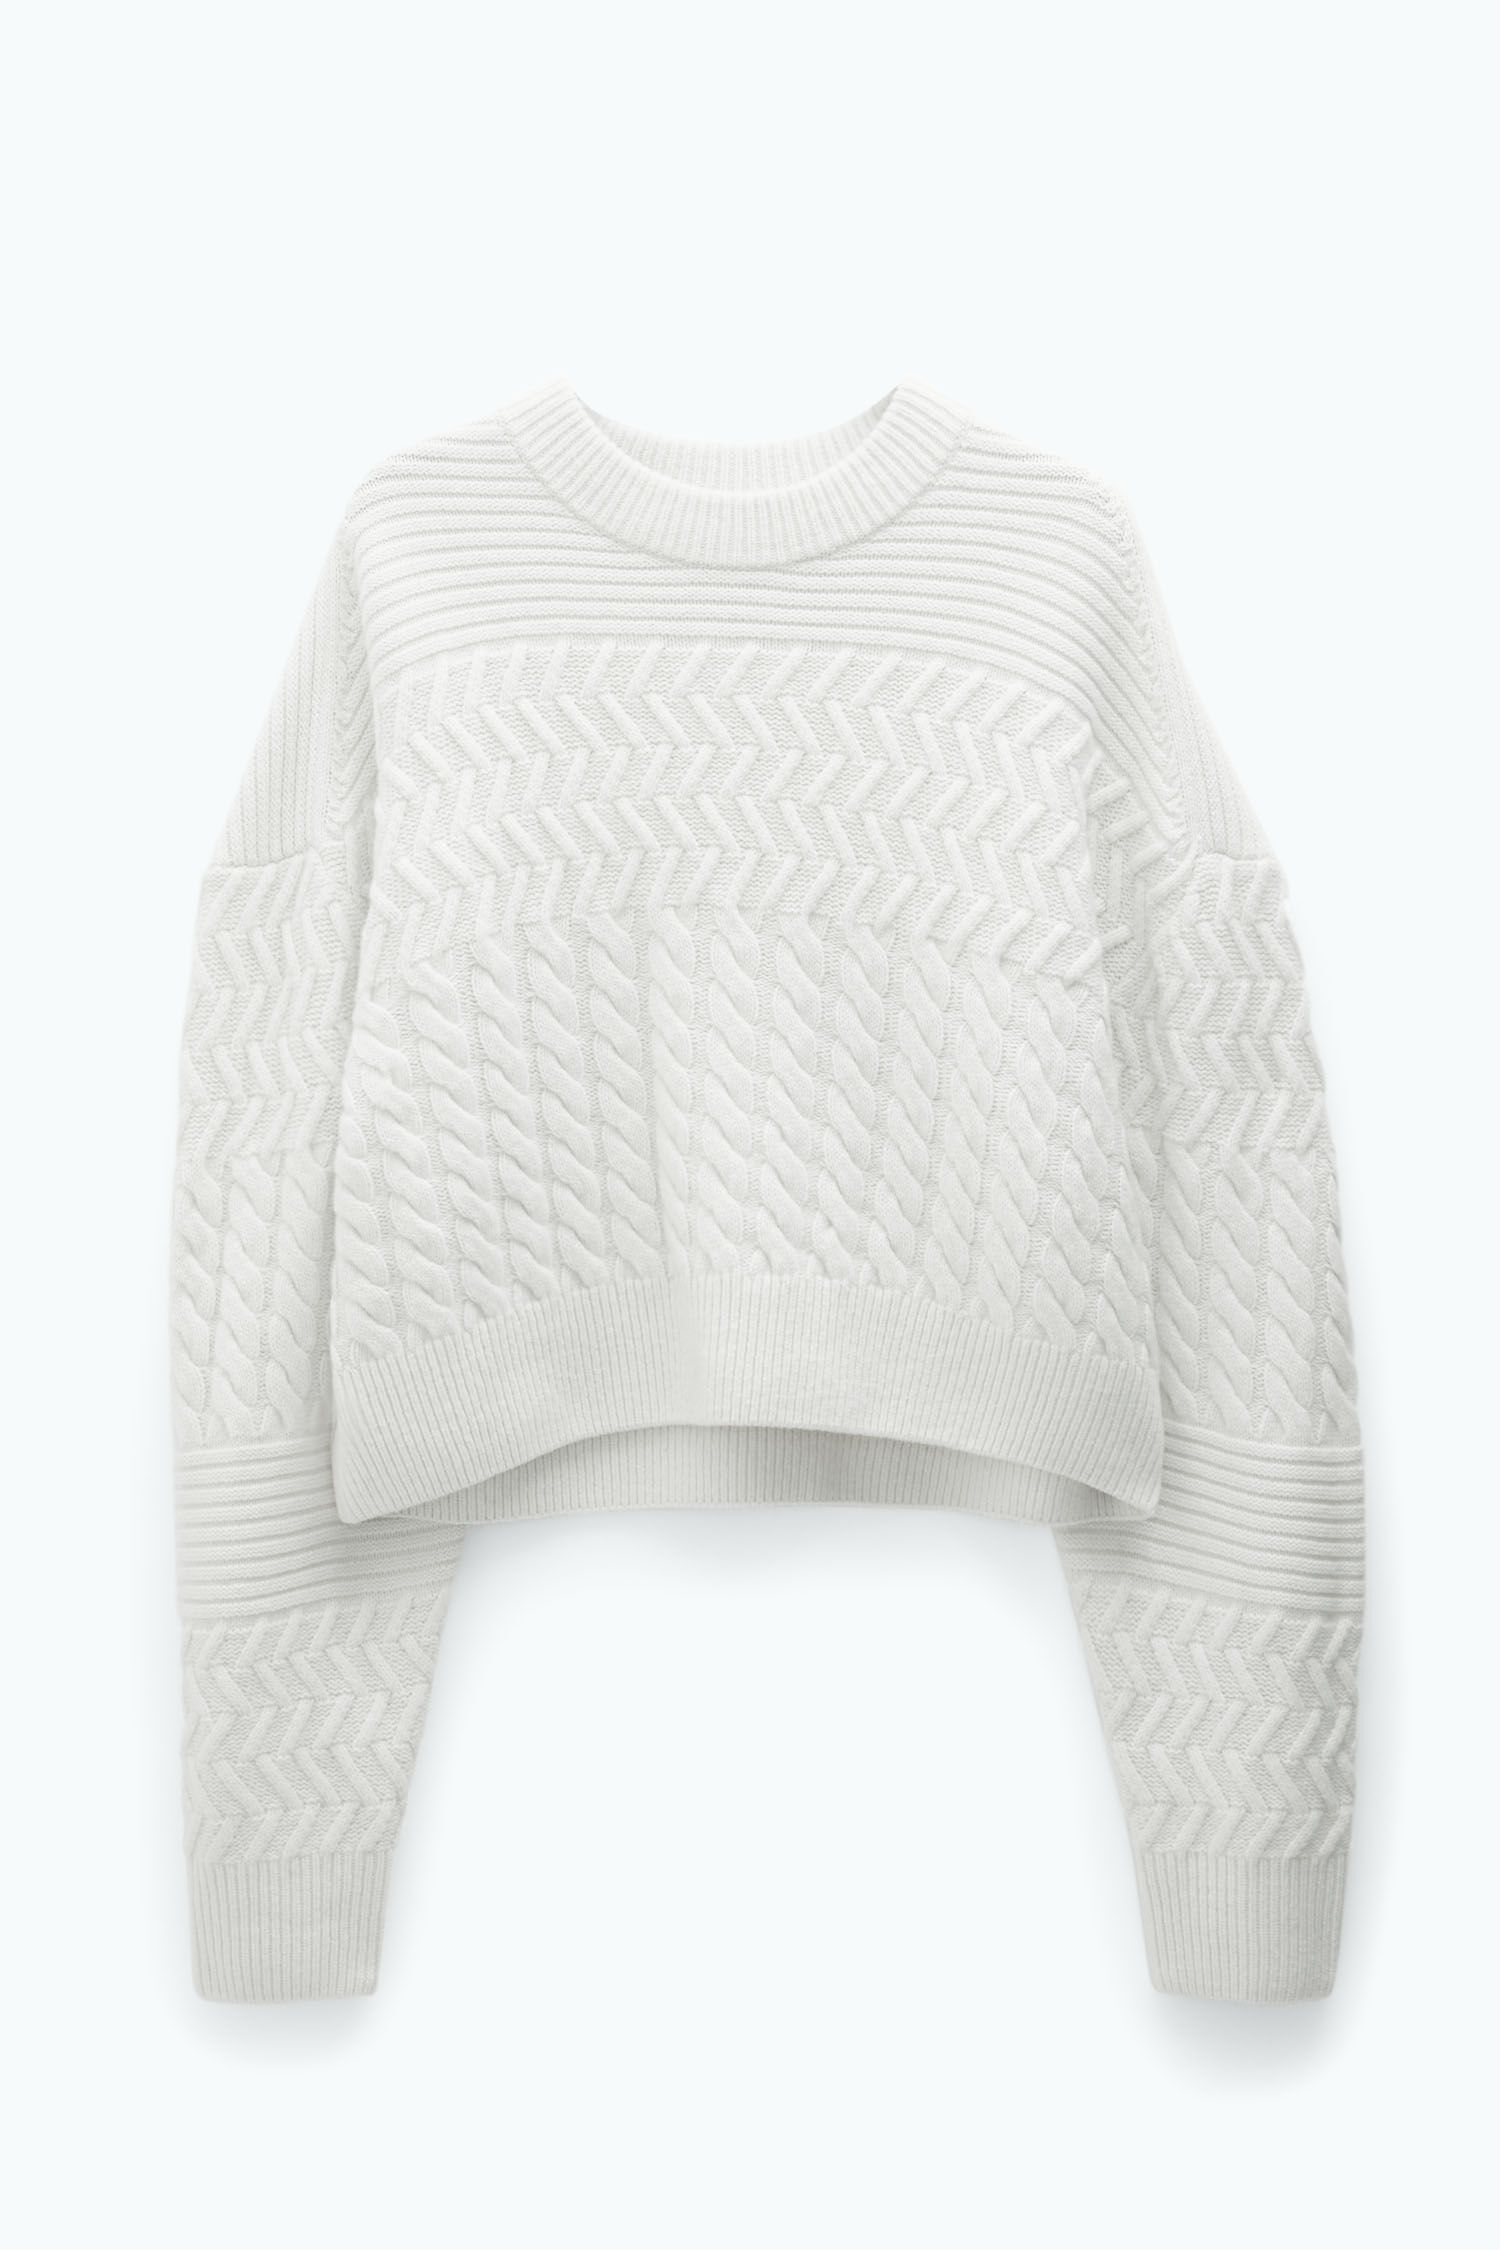 Boxy Braided Sweater